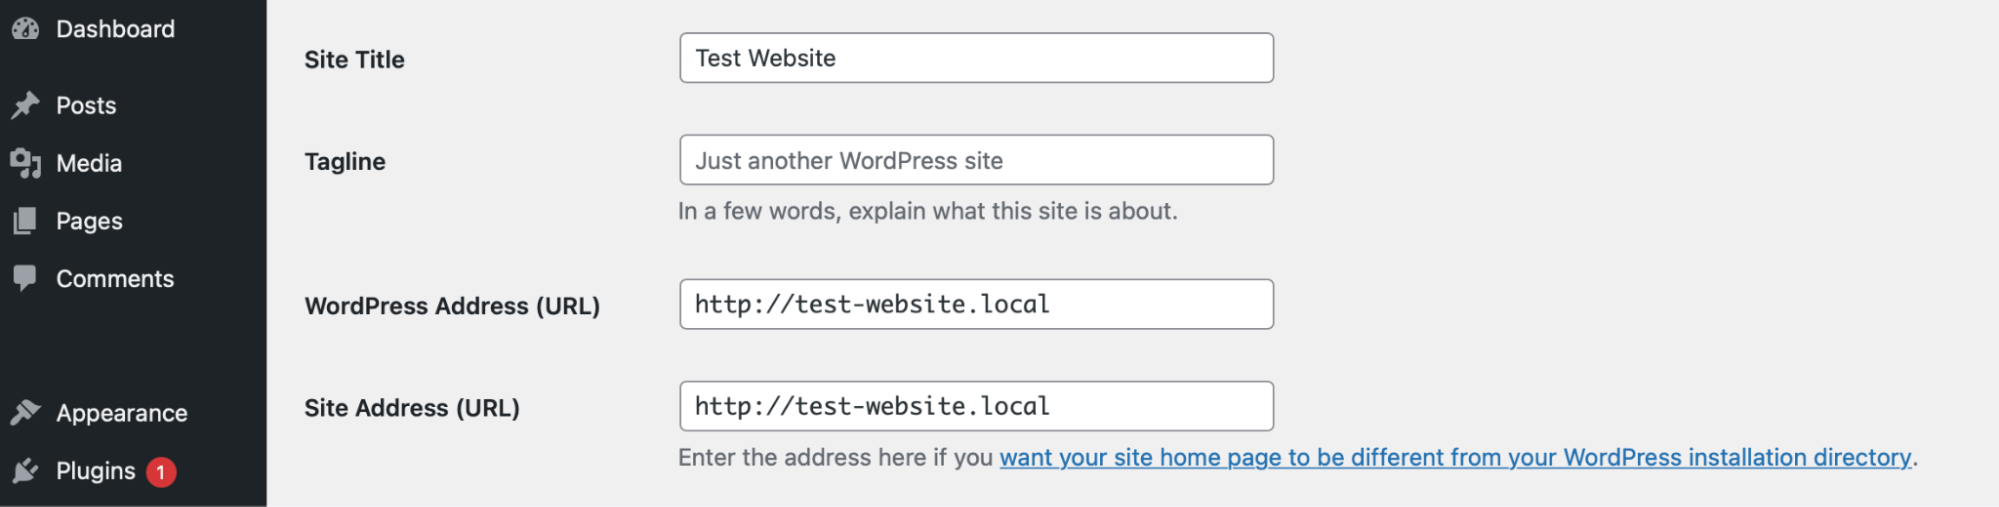 aggiornare gli indirizzi di WordPress e del sito all'interno della dashboard